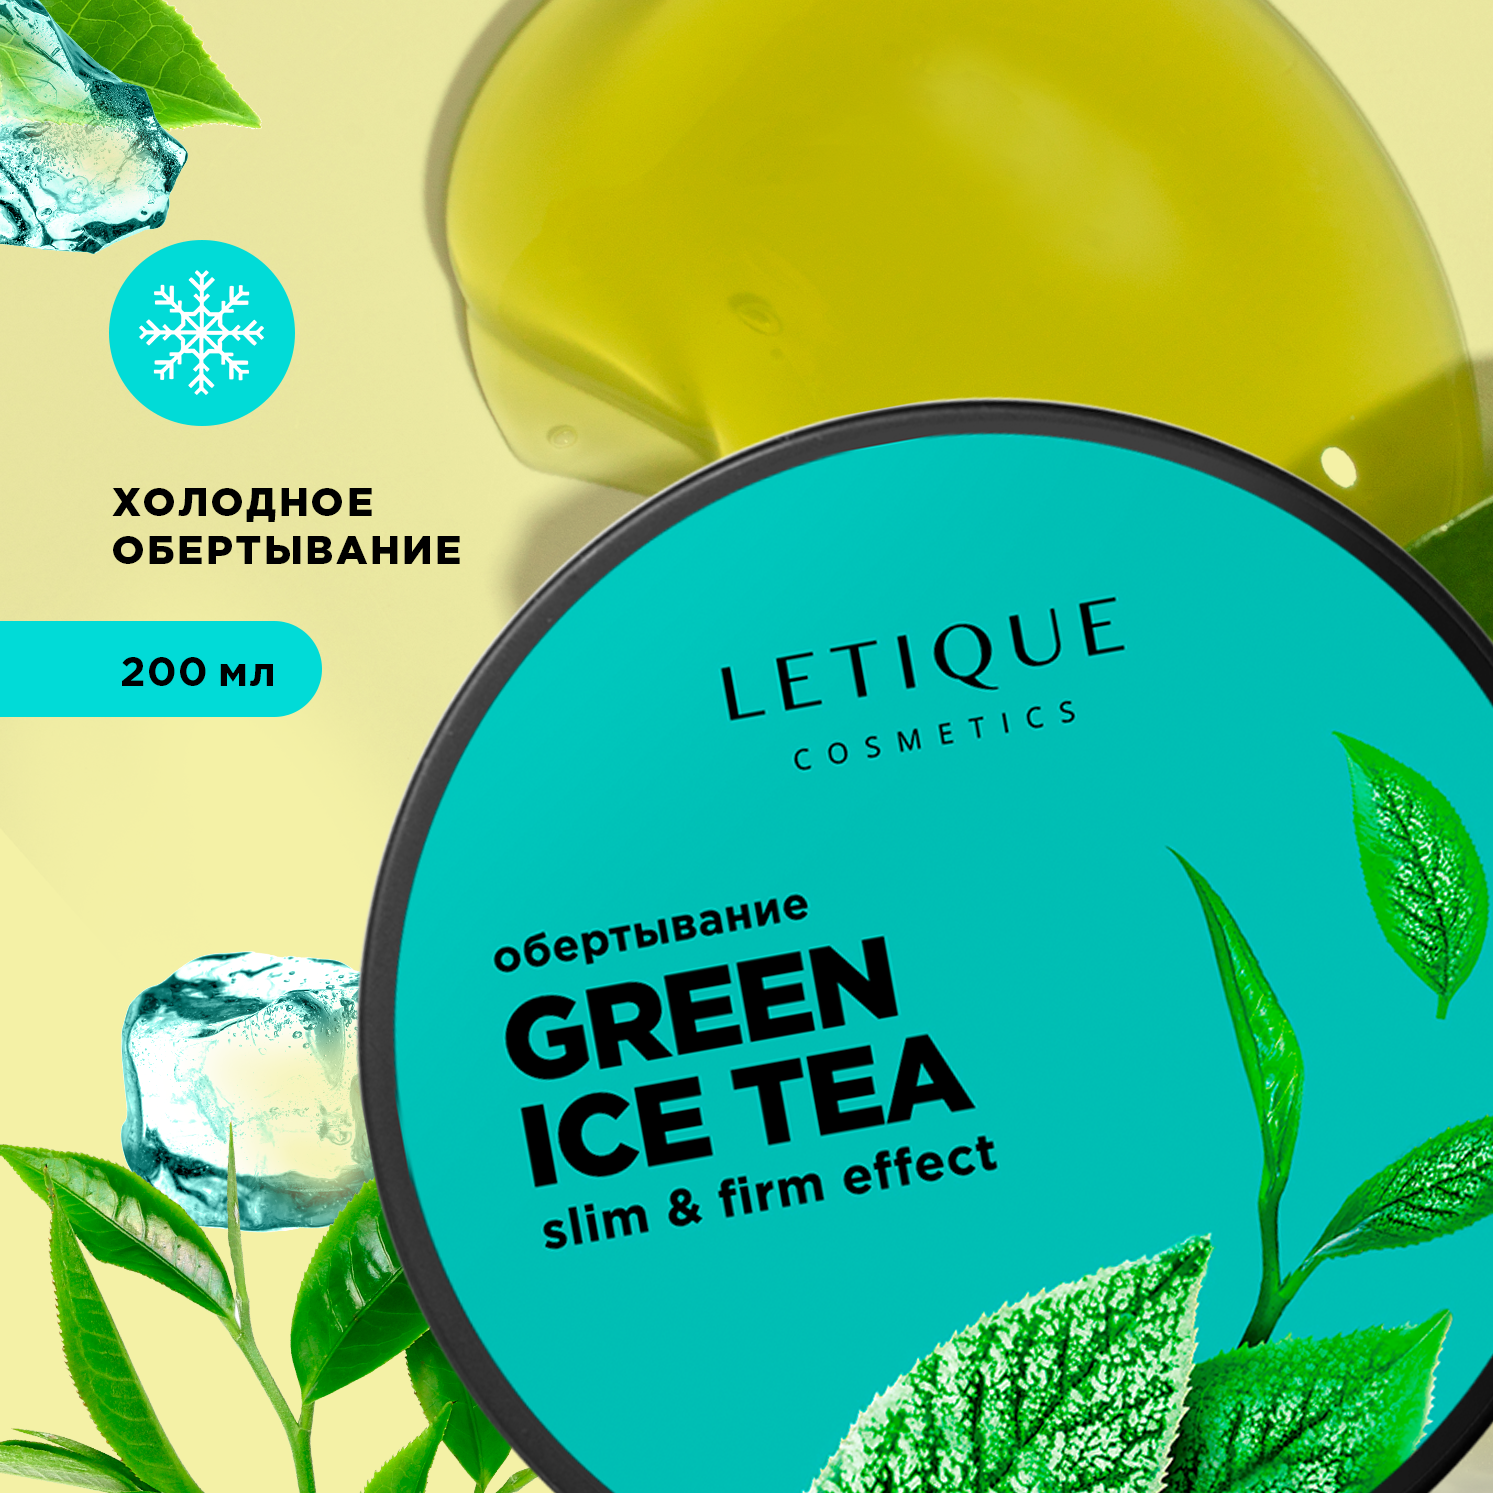 Обертывание холодное для тела Letique Cosmetics Green Ice Tea